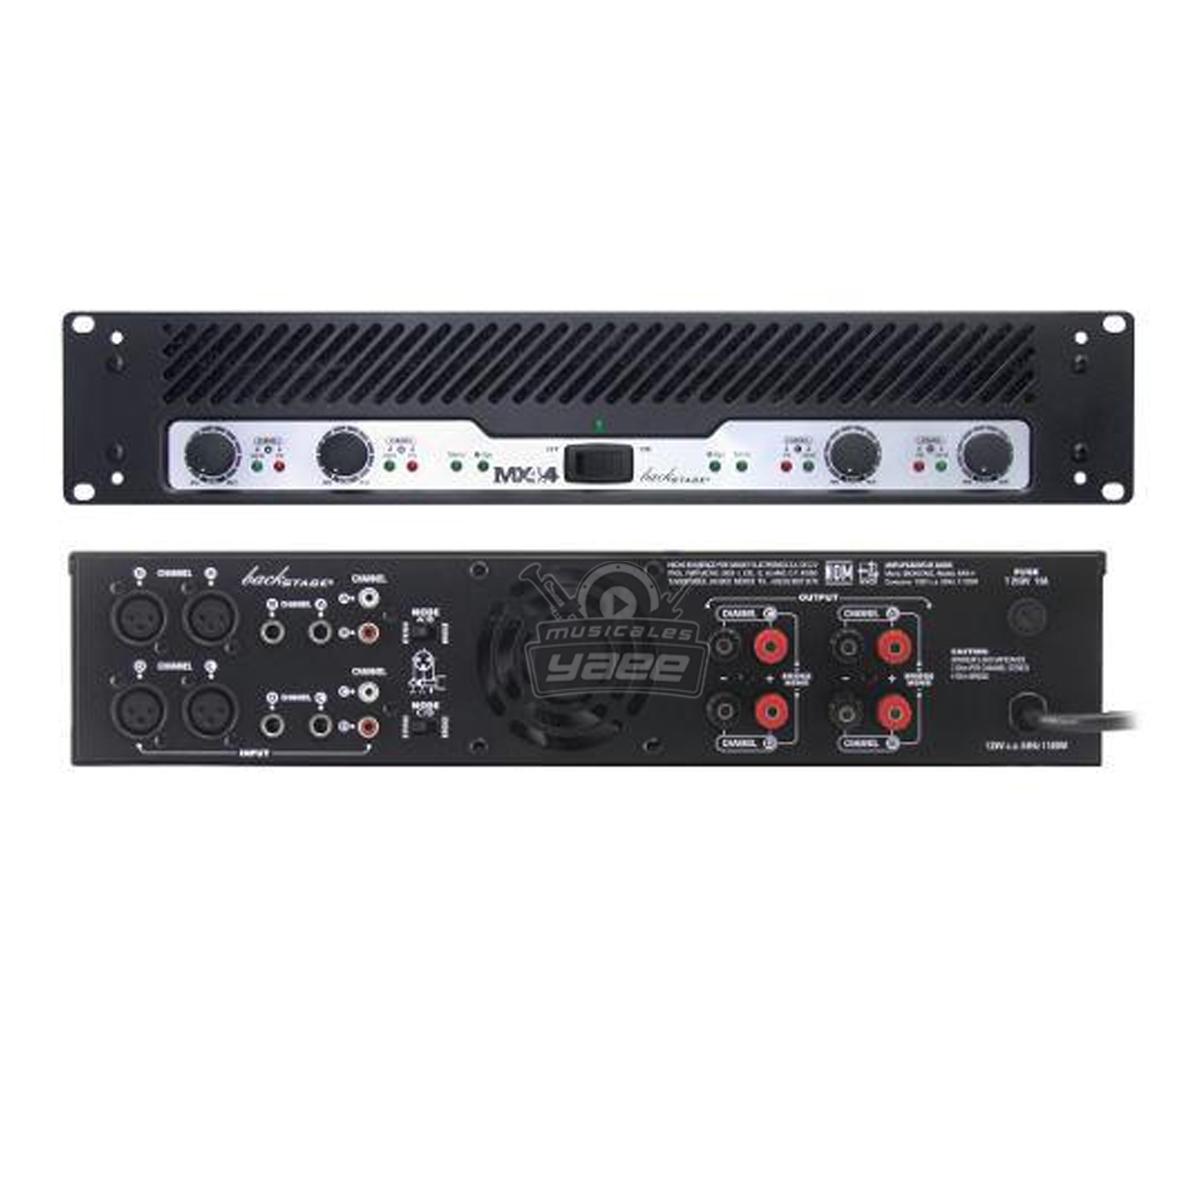 Paquete audio PRO Incluye 4 Bocinas VXS5 Yamaha y 1 MX4.4 Backstage blanco